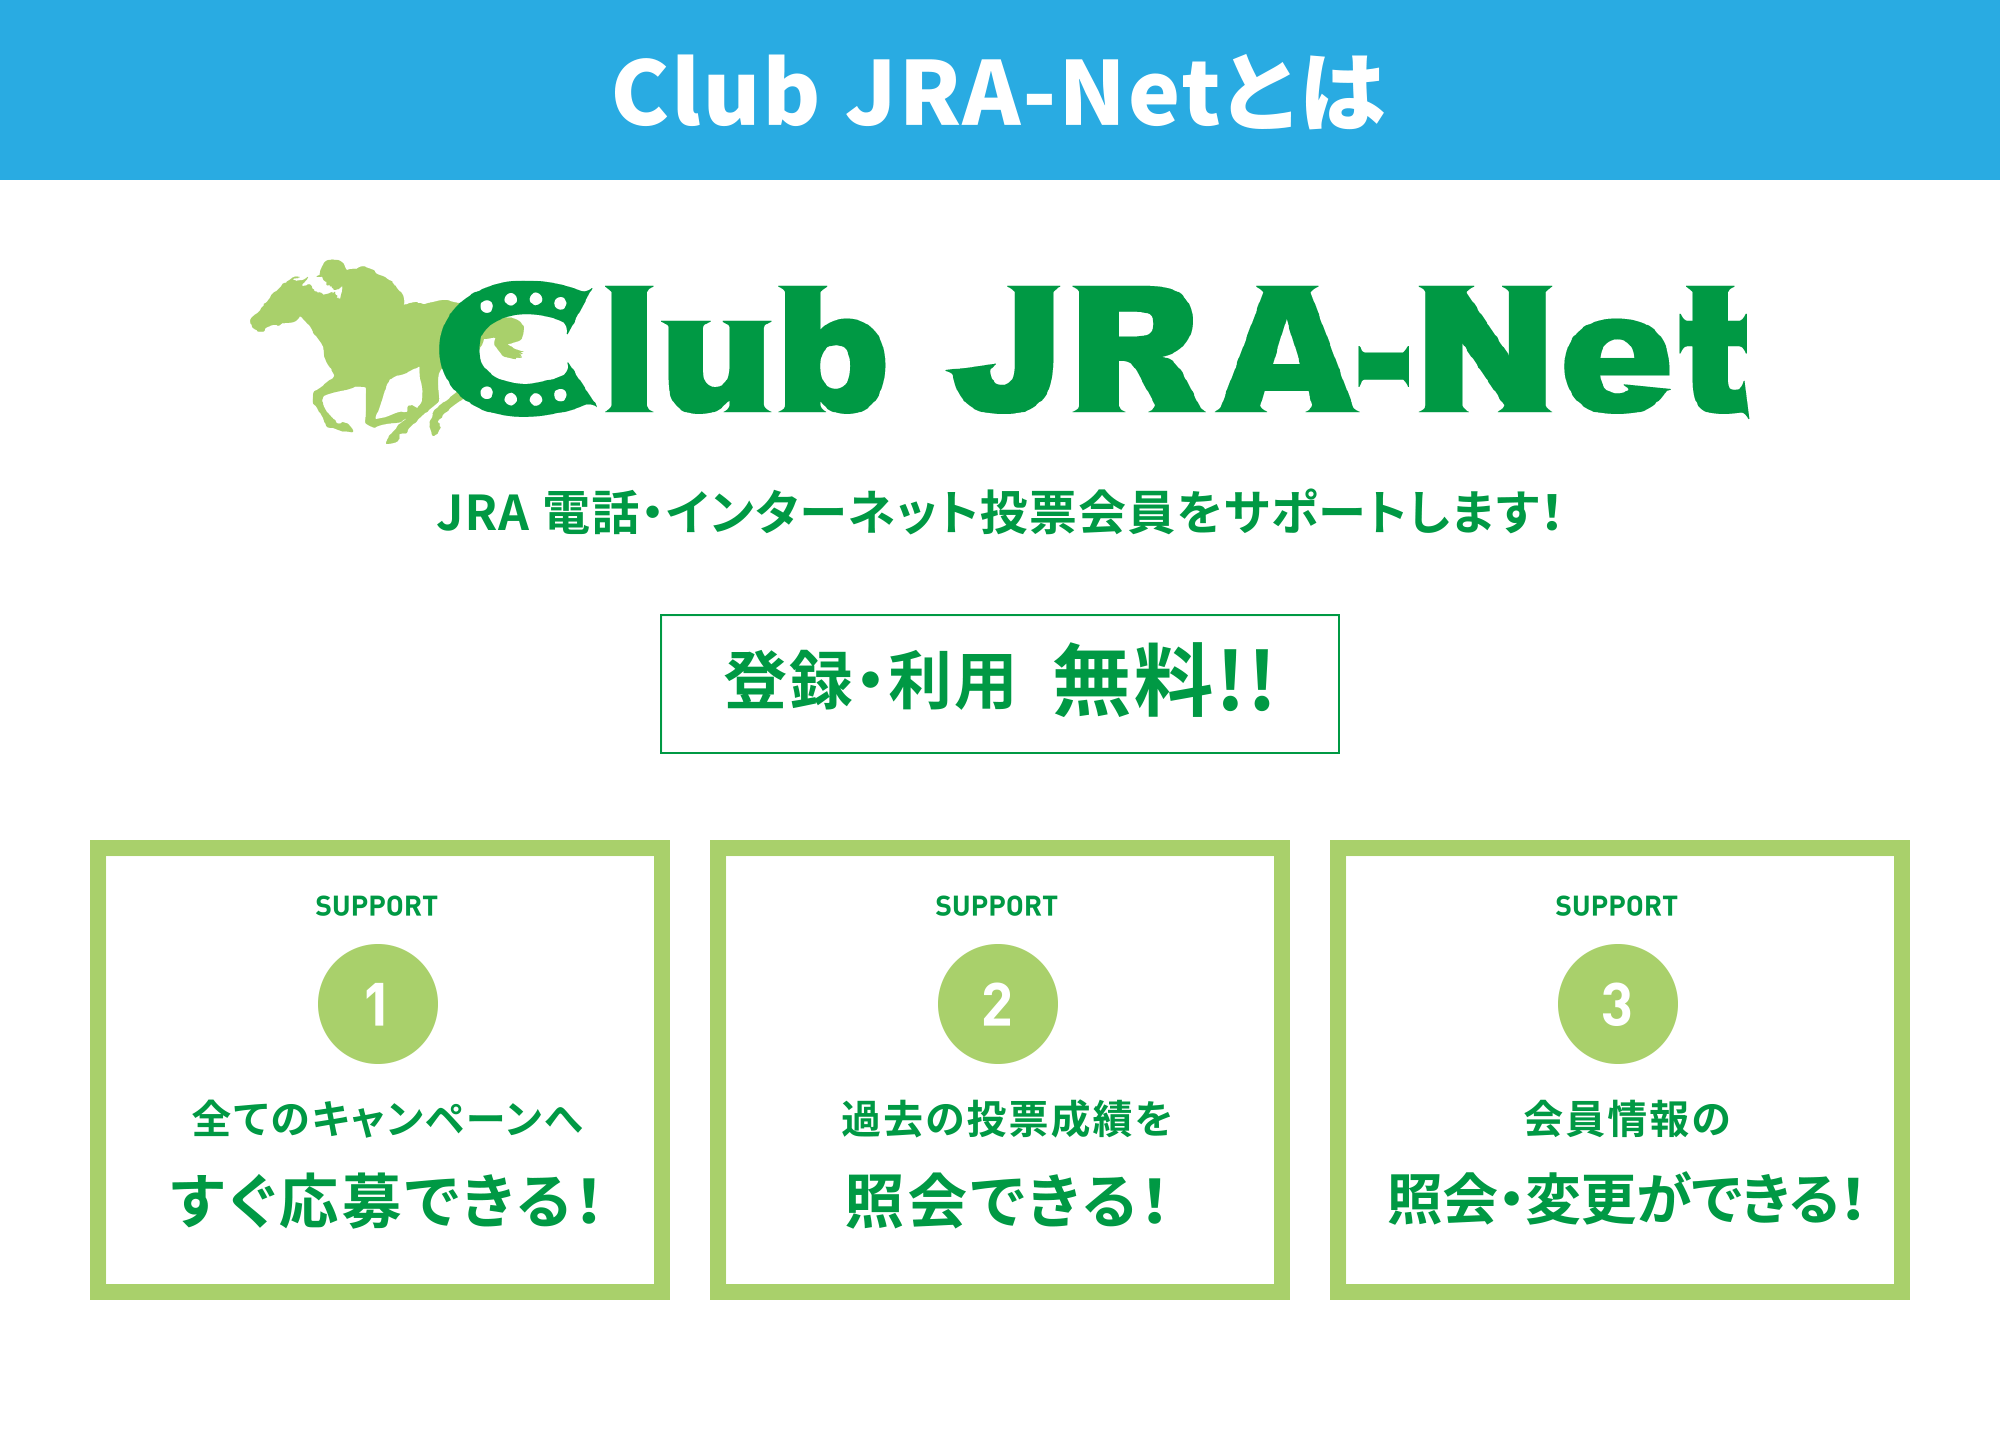 Club JRA-Netとは
JRA 電話・インターネット投票会員をサポートします！登録・利用  無料!!
SUPPORT1  全てのキャンペーンへすぐ応募できる！
SUPPORT2  過去の投票成績を照会できる！
SUPPORT3  会員情報の照会・変更ができる！